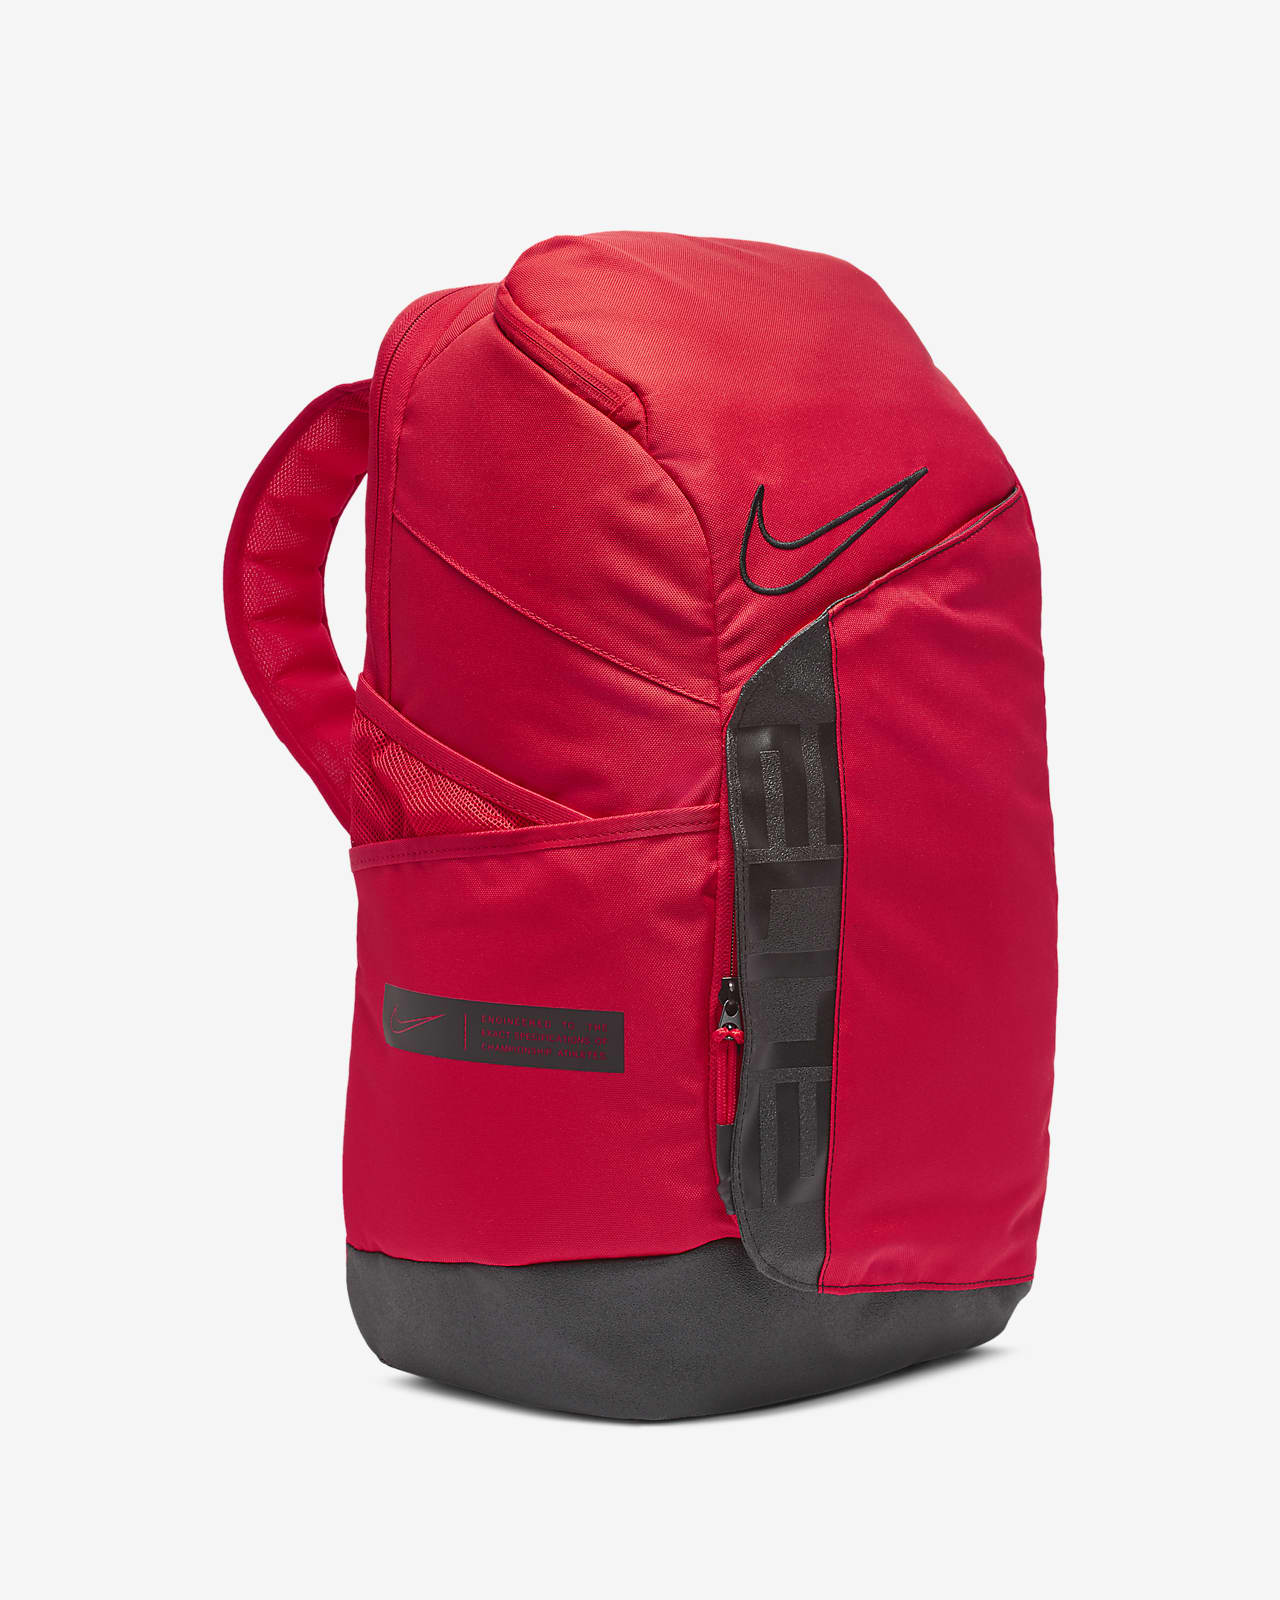 nike elite backpack 2019